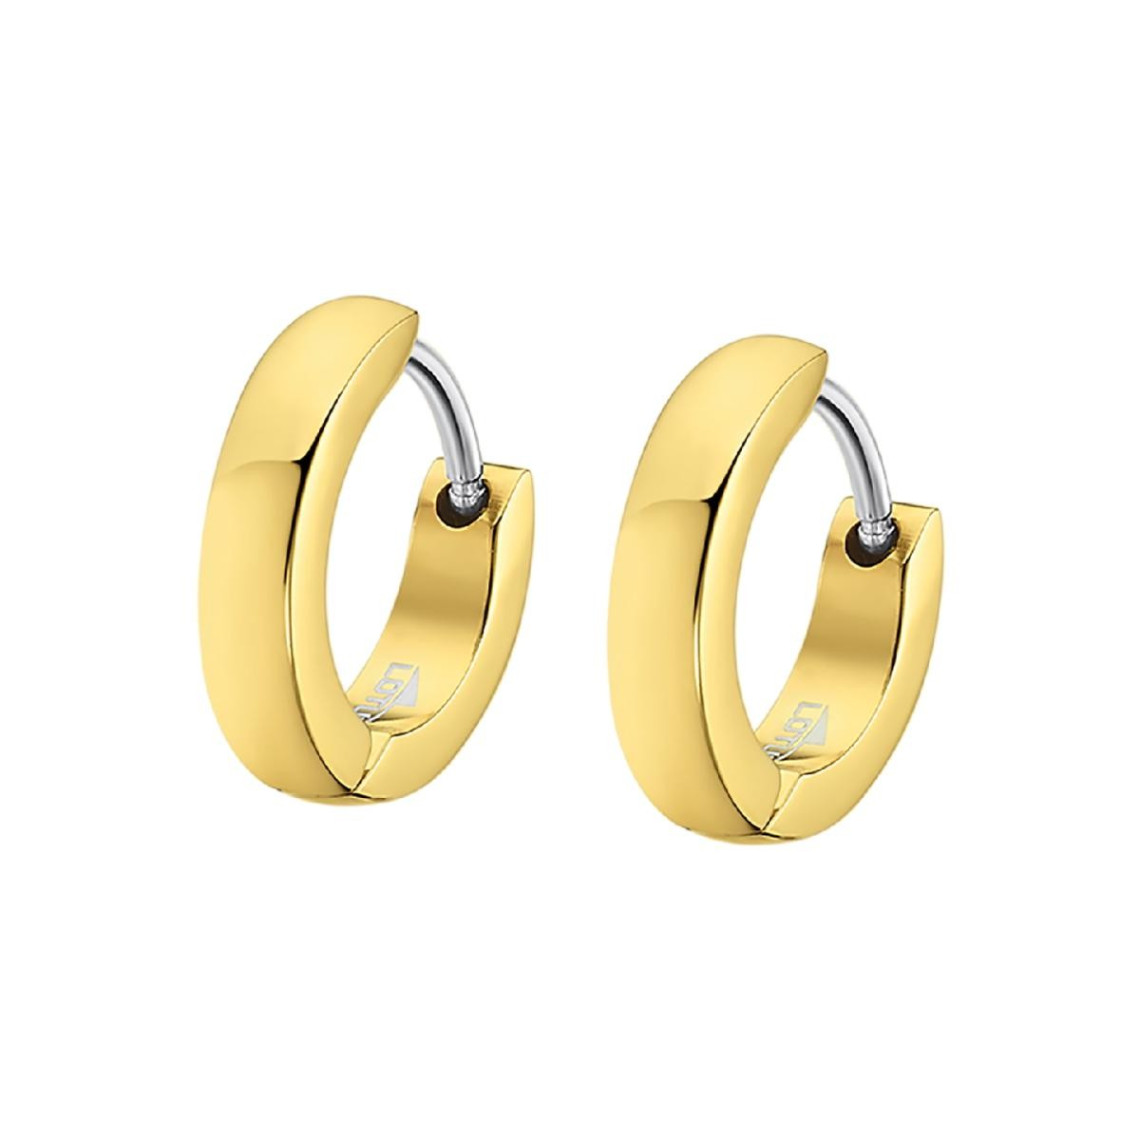 boucles d'oreilles homme lotus style bijoux men's earrings ls2226-4-1 acier doré